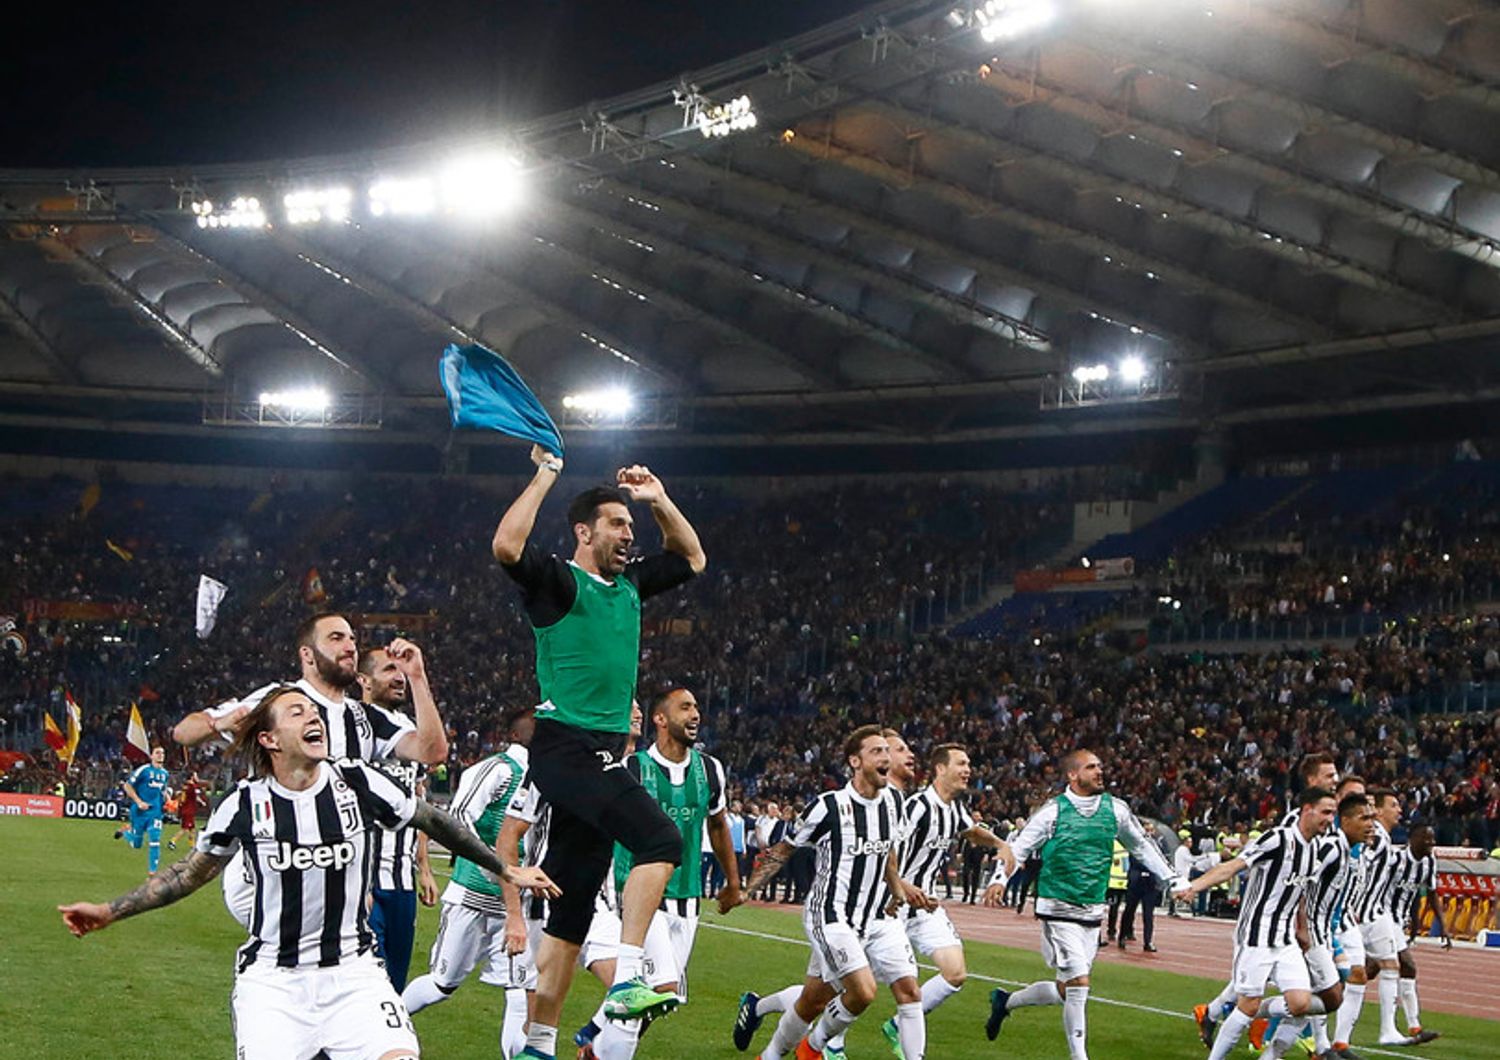 &nbsp;Juventus campione d'Italia stagione 2017-2018 (AGF)